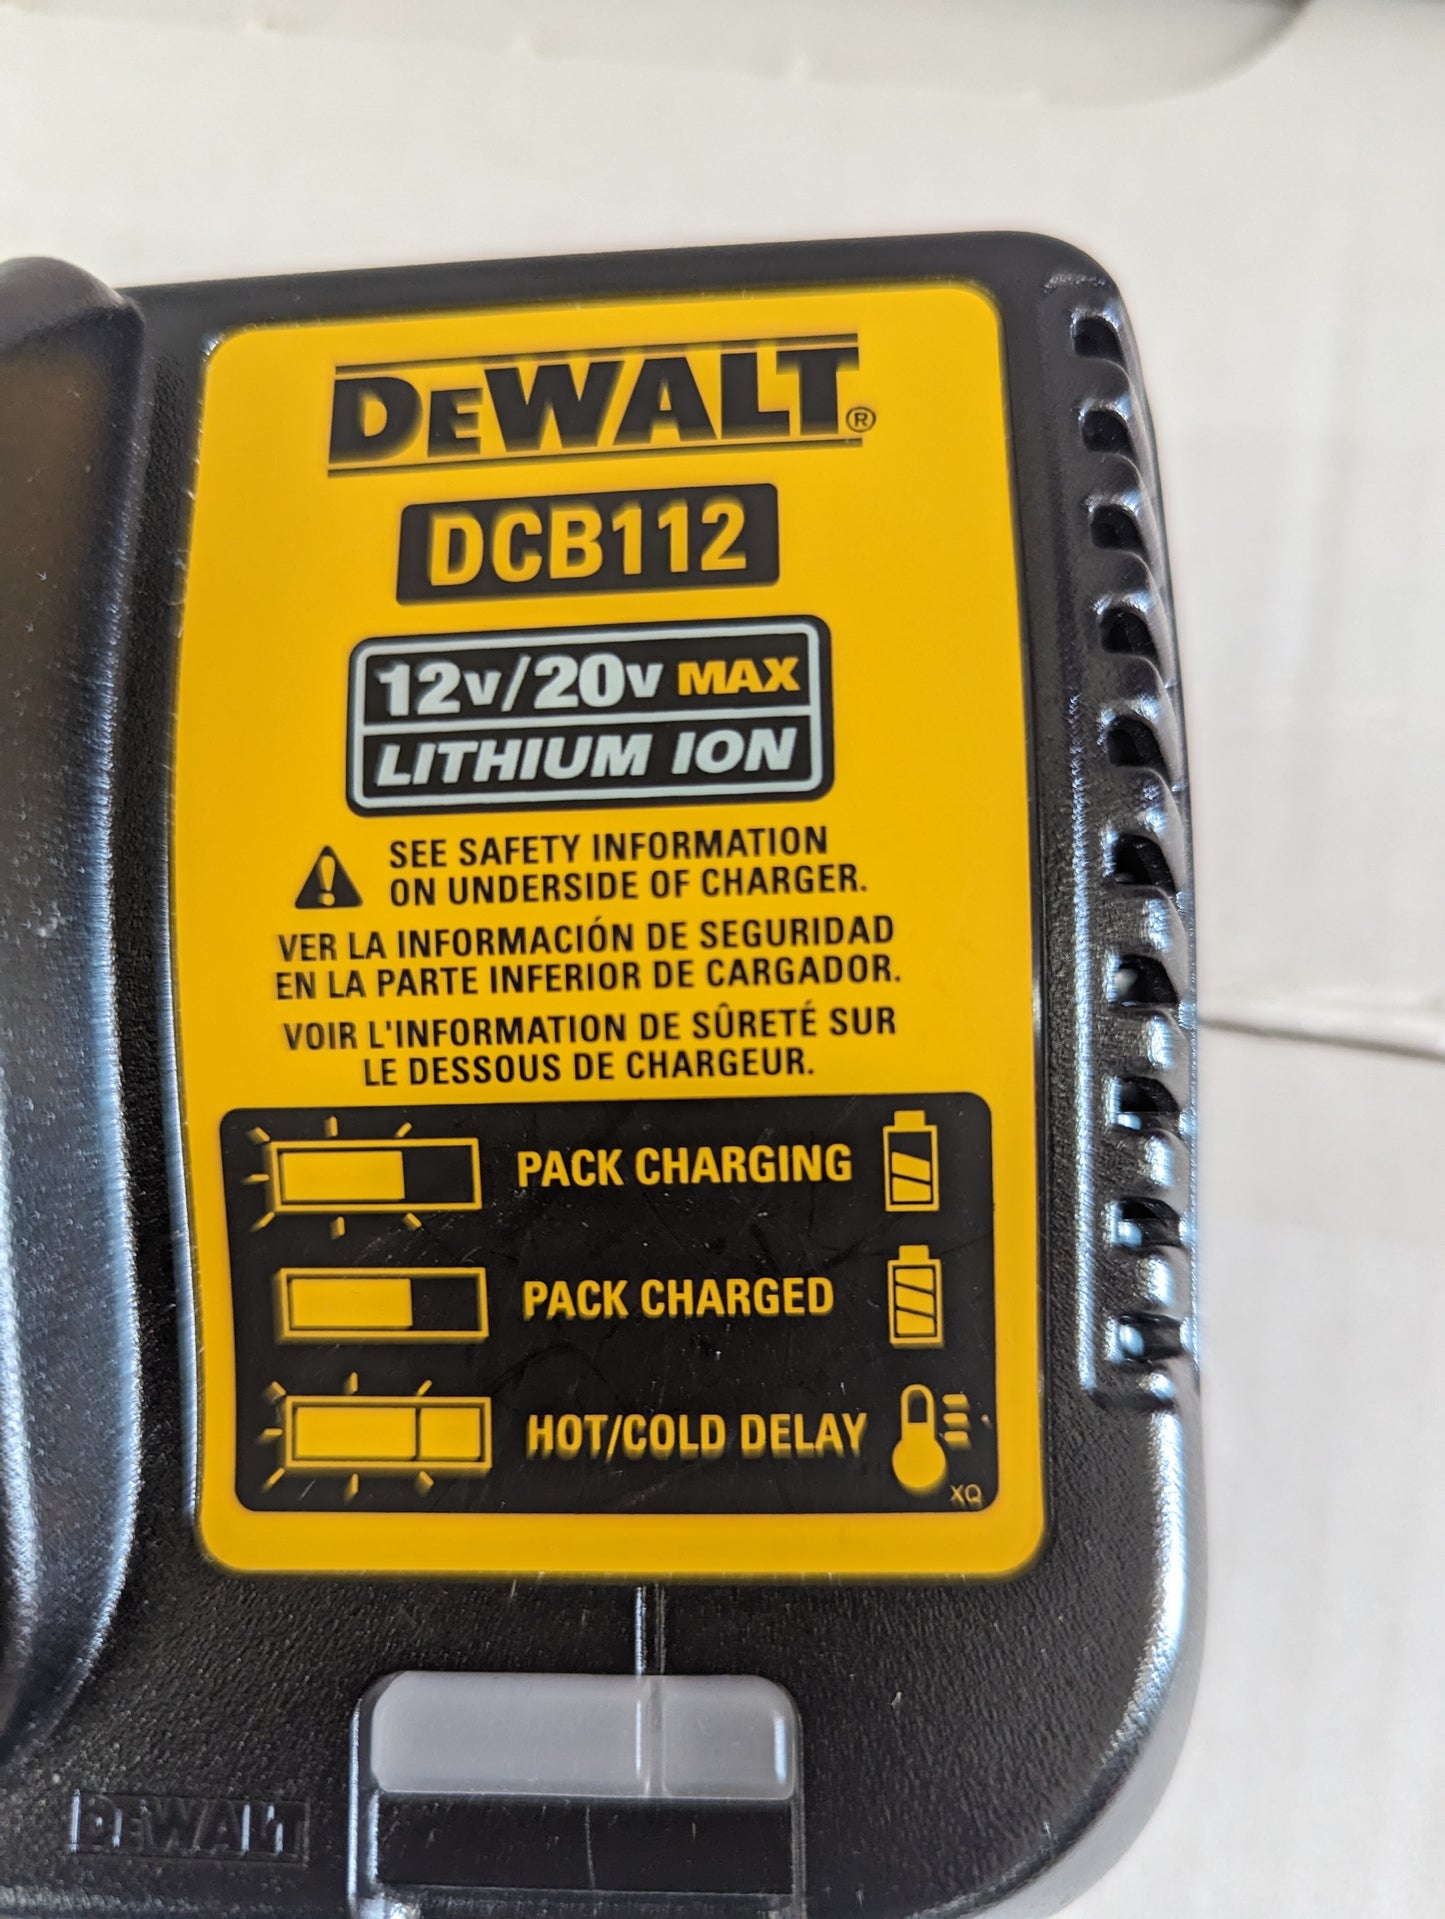 DeWalt DCB112 12v/20v Lithium Ion Battery Charger